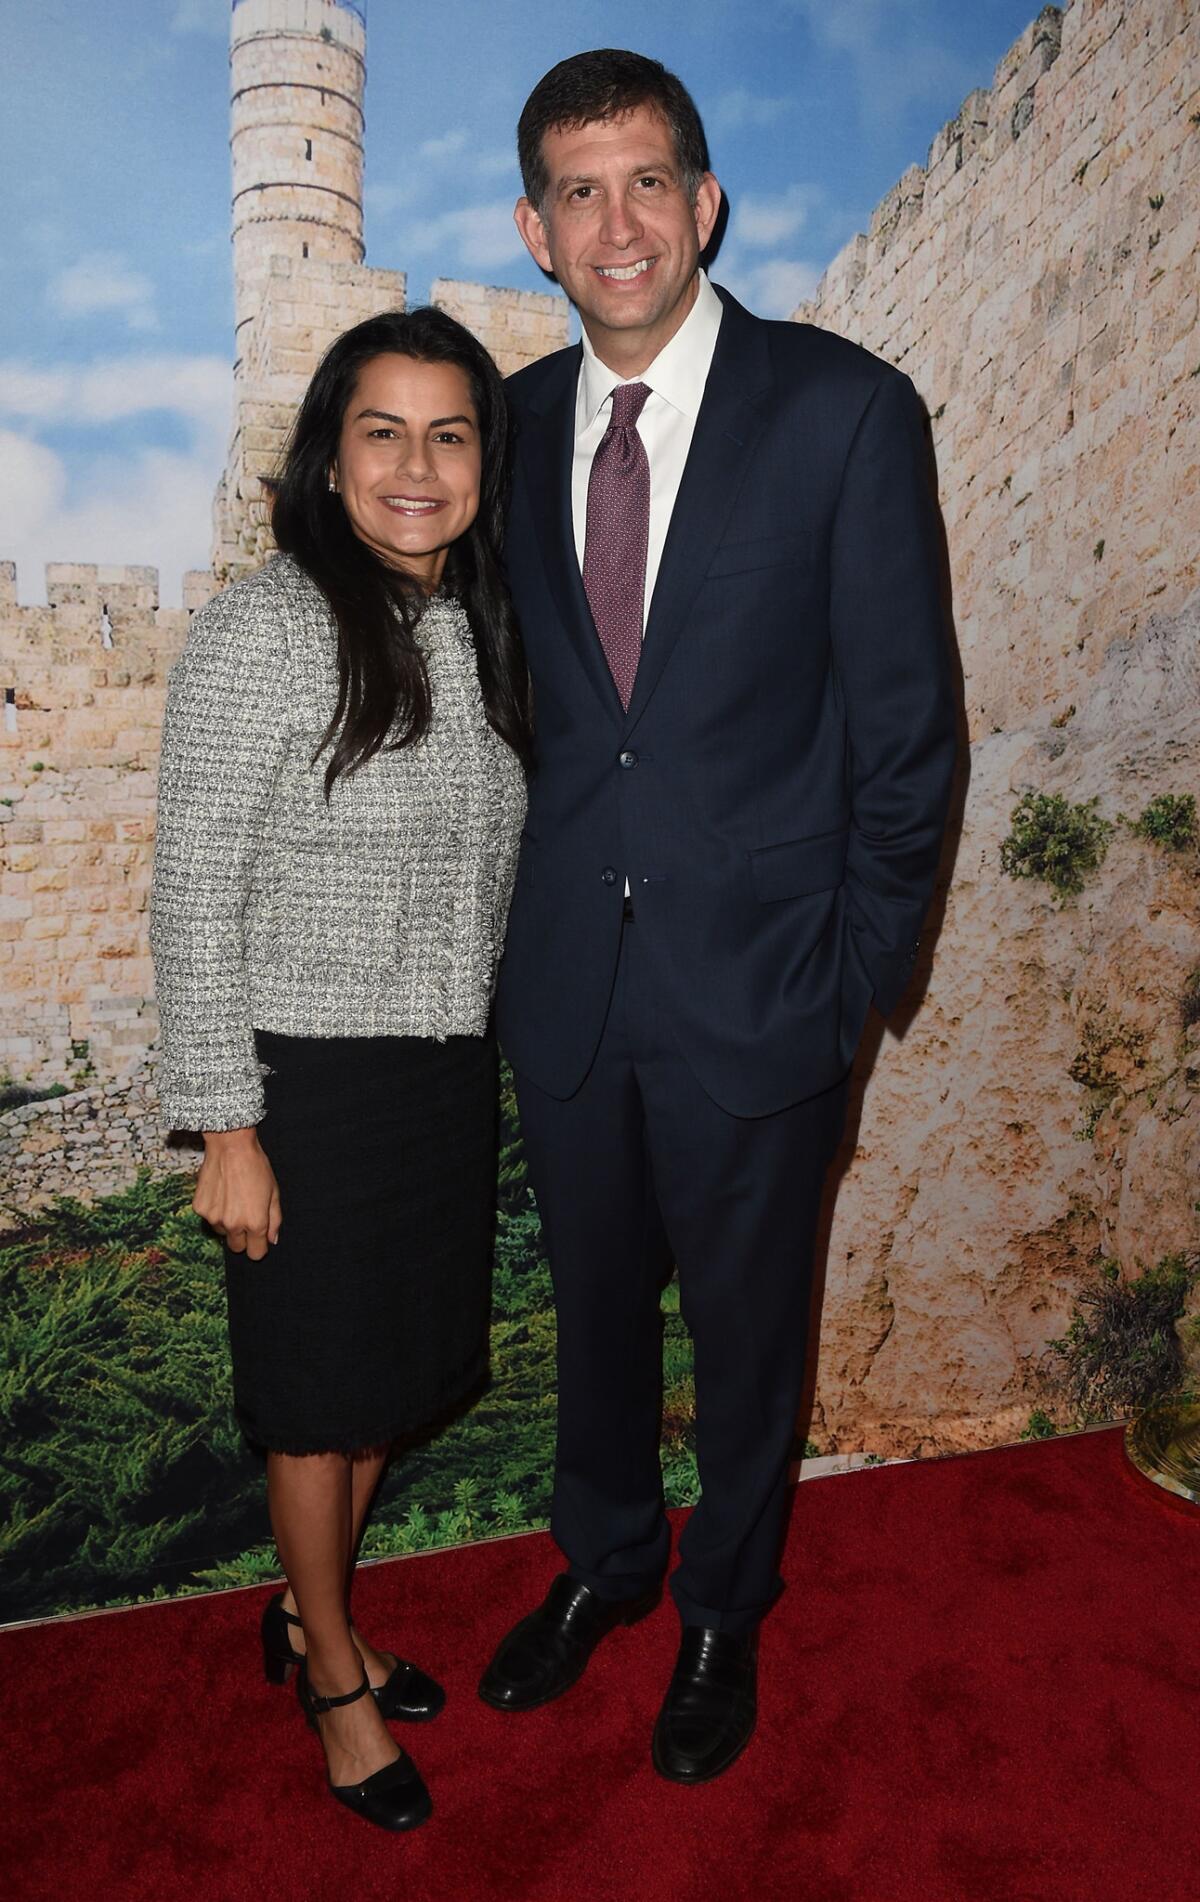 La congresista electa Nanette Barragán comparte un momento con el cónsul de Israel Sam Grndwerb.